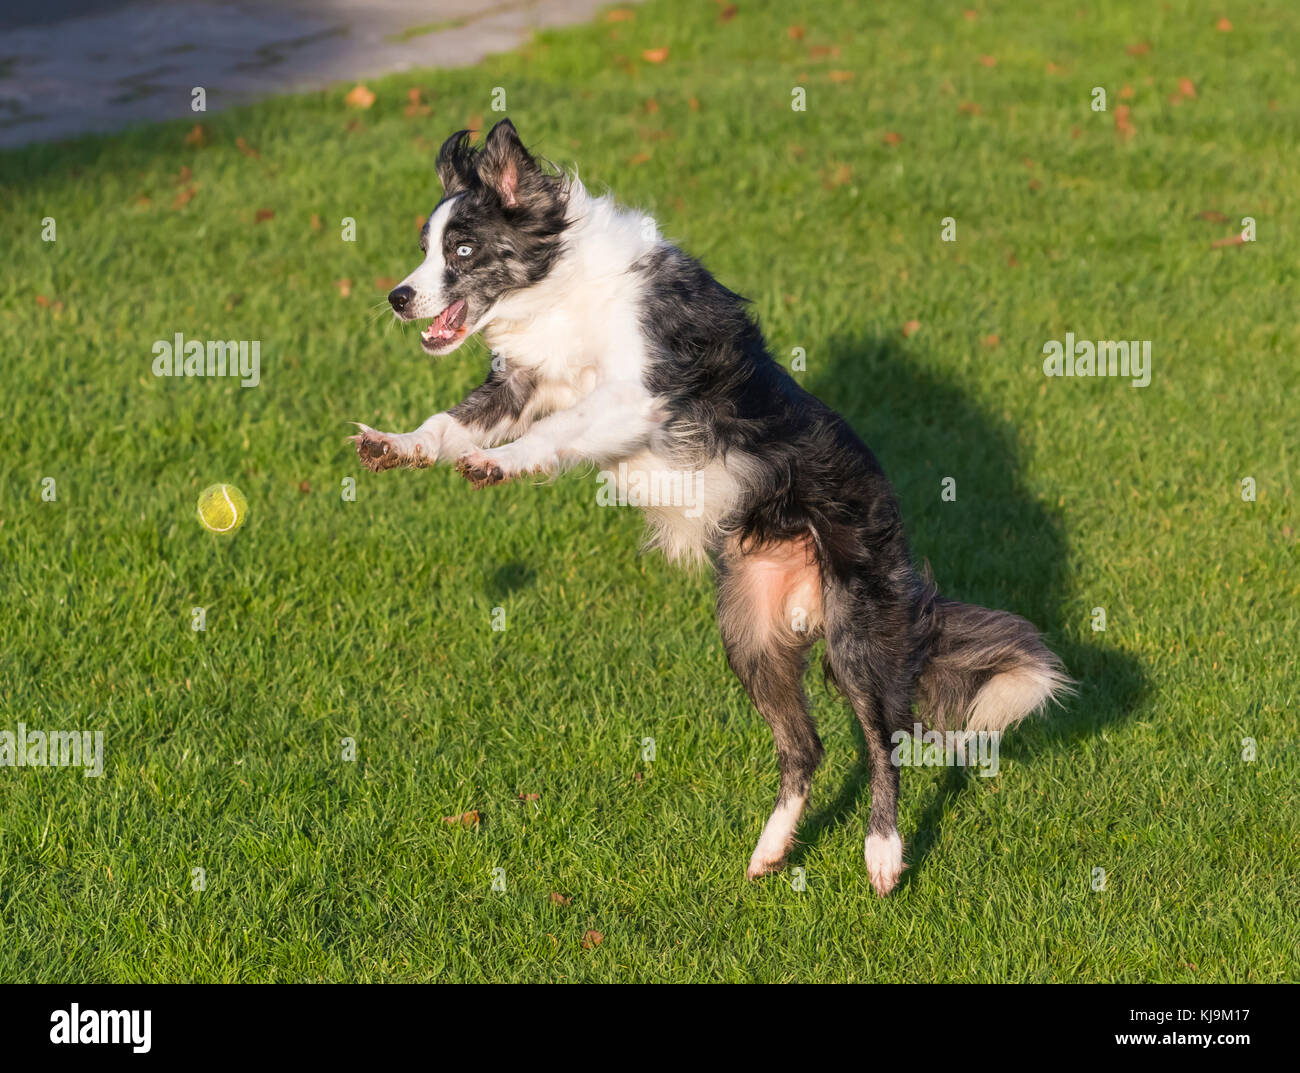 Un perro saltando para atrapar una pelota. Foto de stock